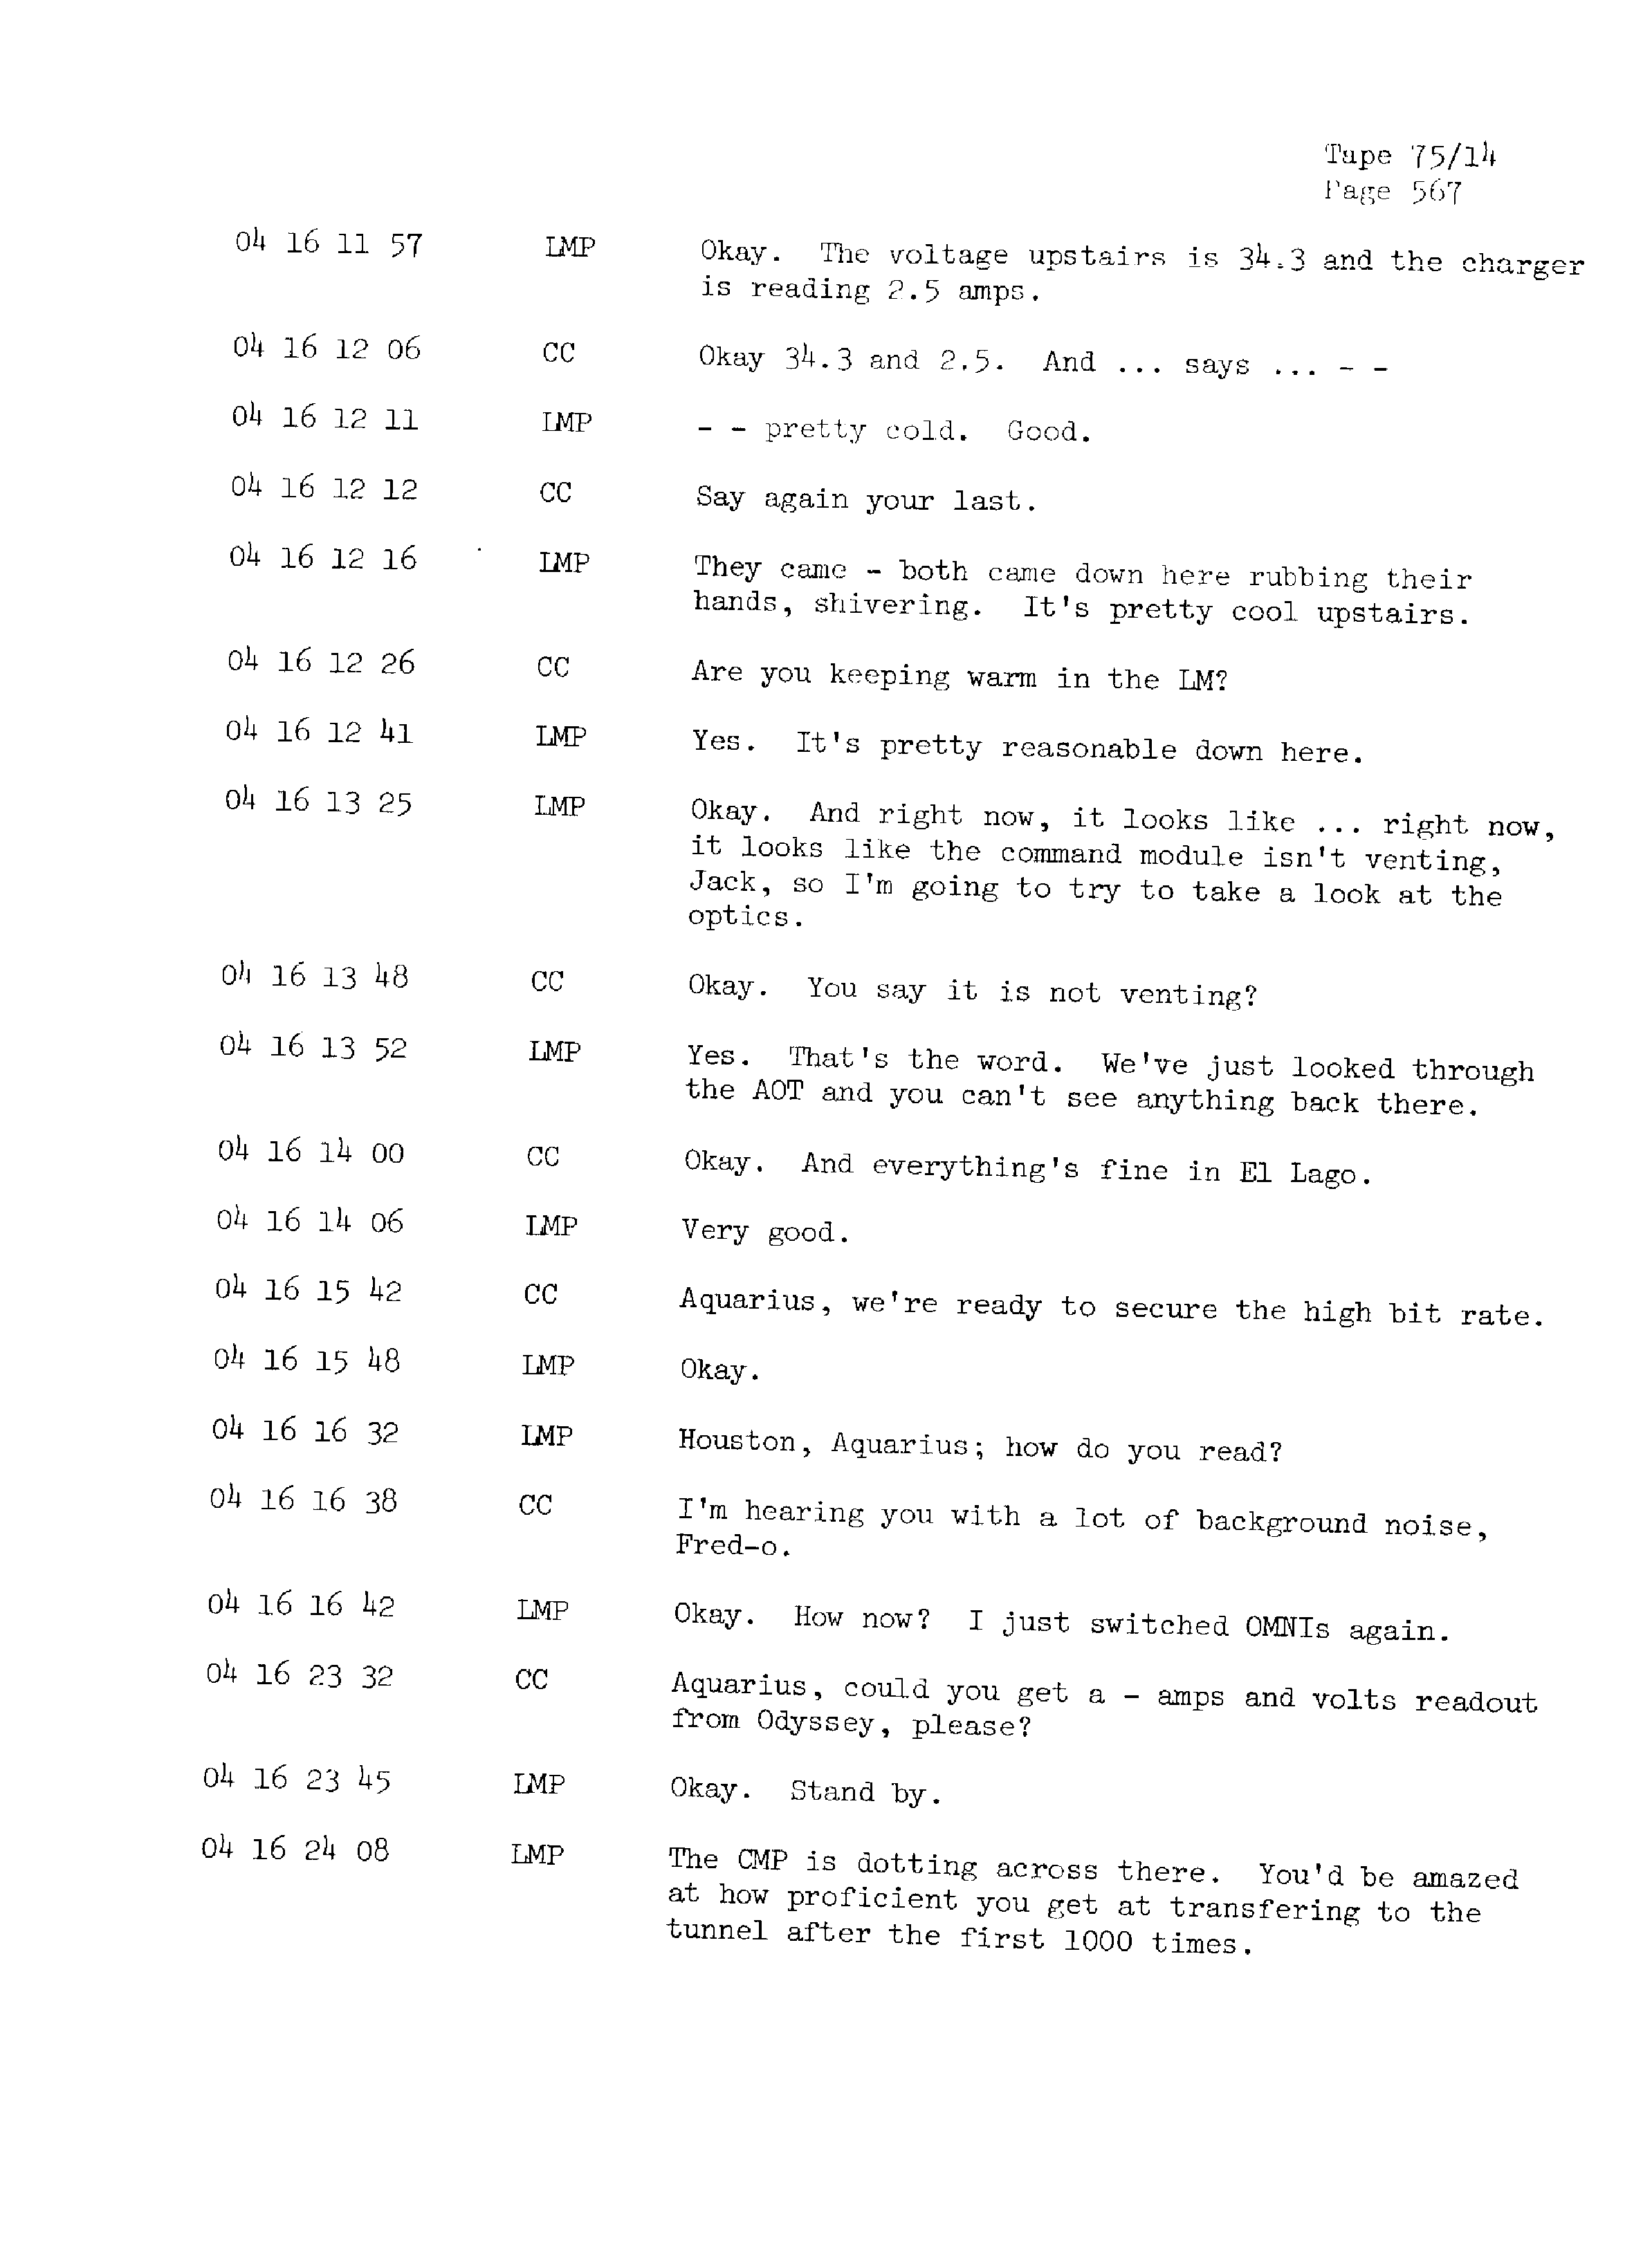 Page 574 of Apollo 13’s original transcript